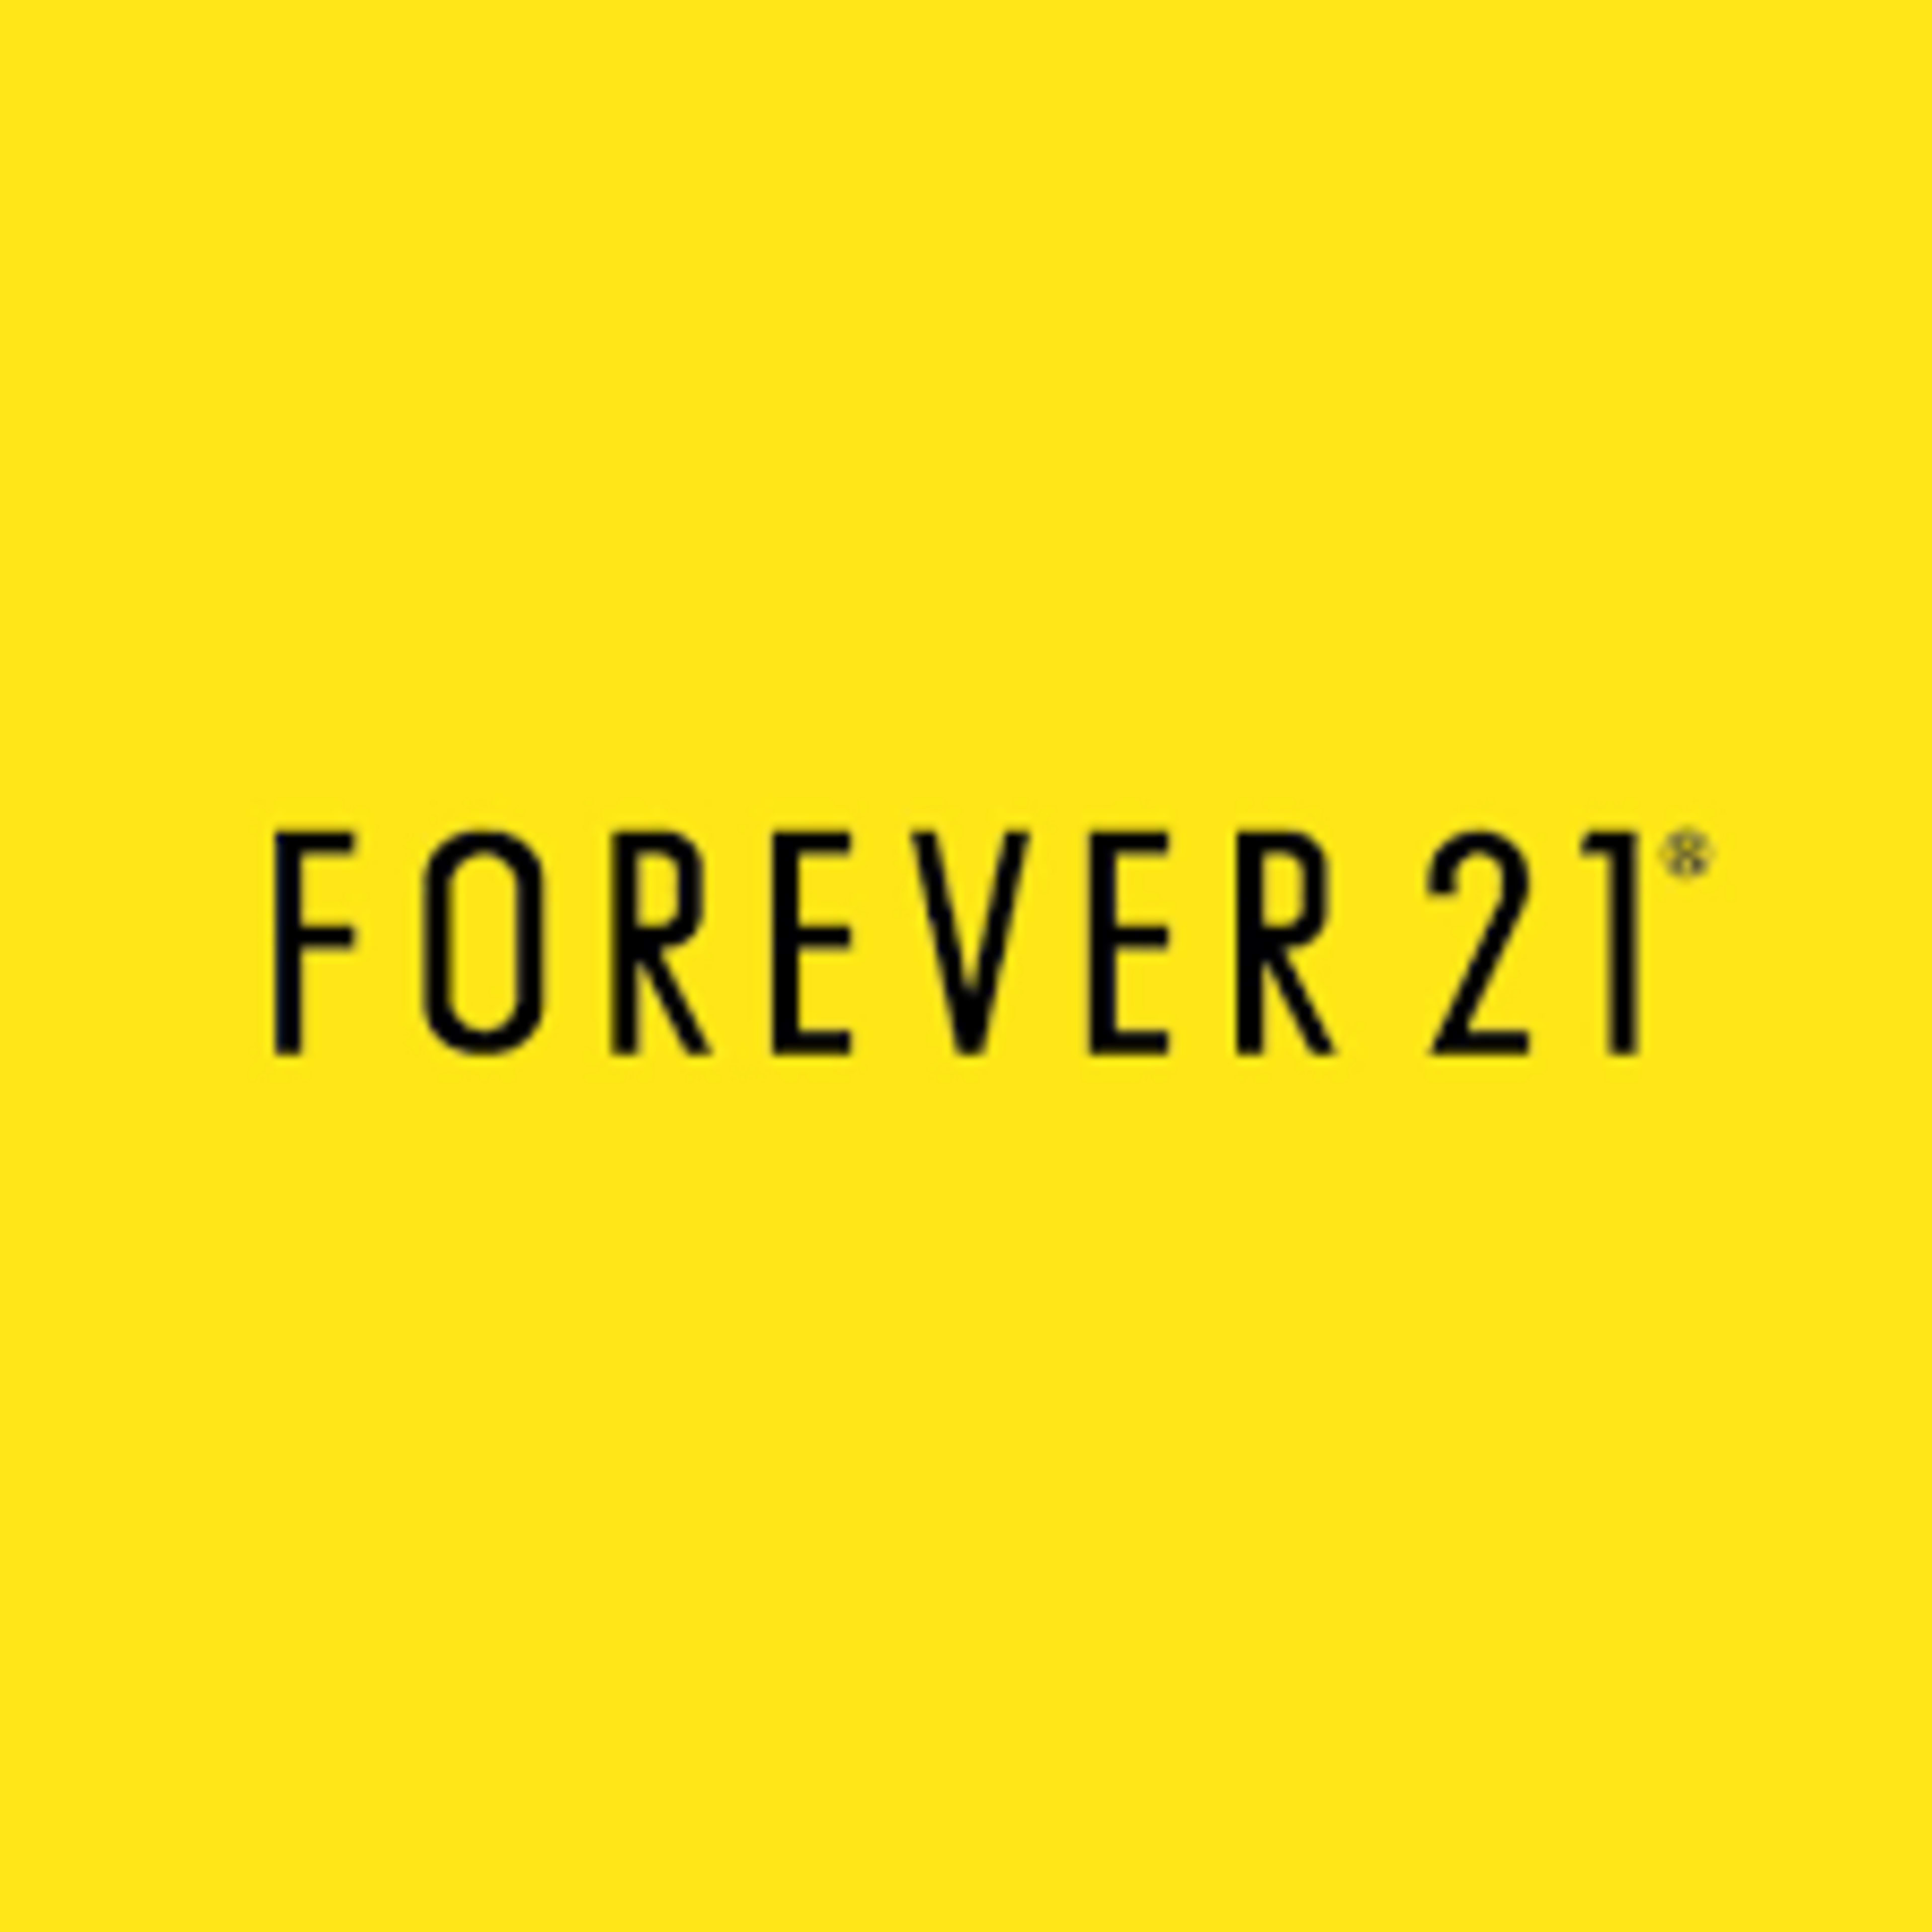 Forever 21 UK